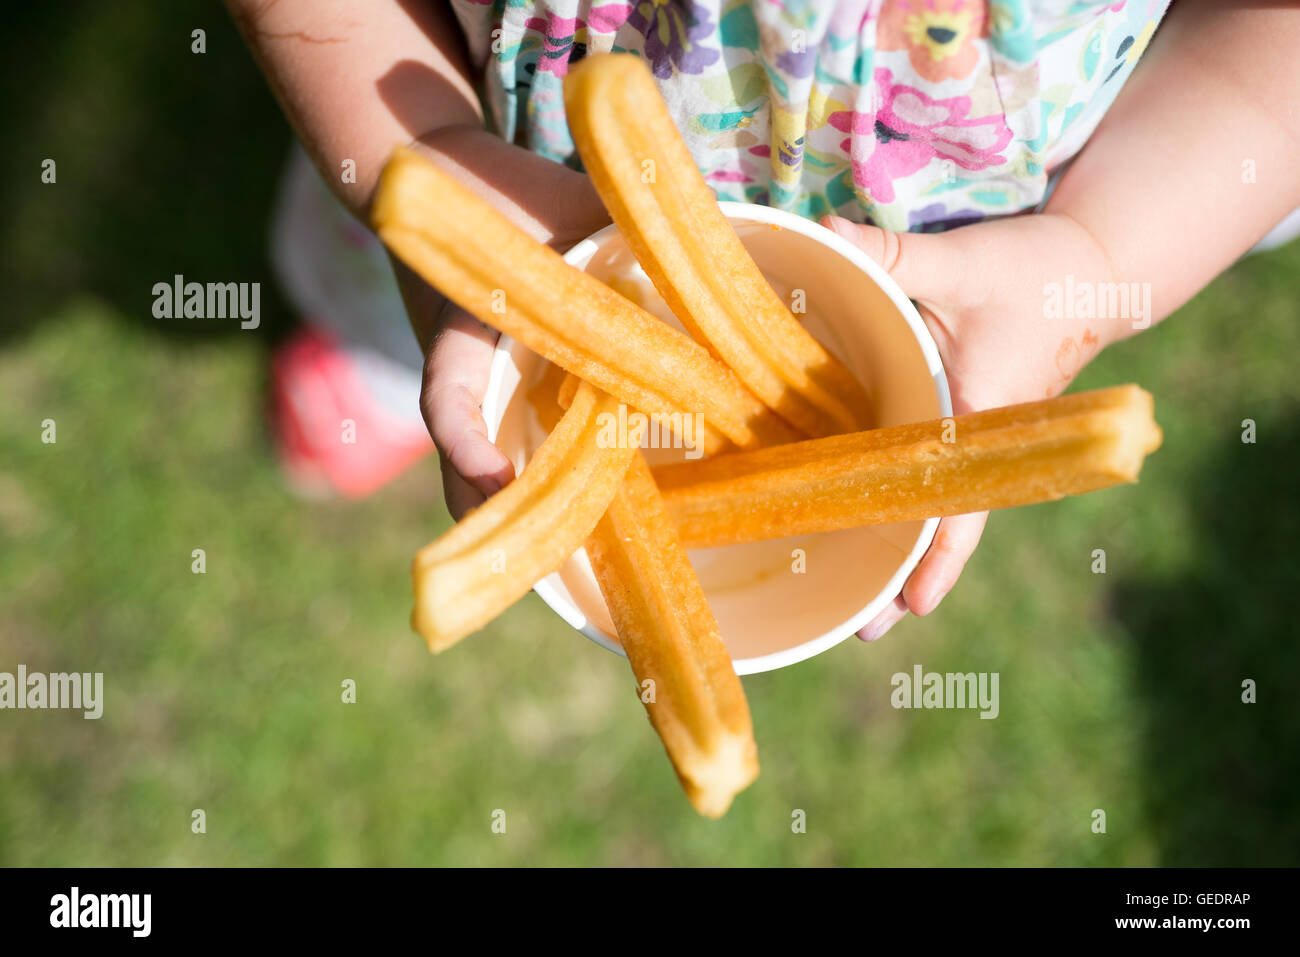 Un gros plan d'une jeune fille dans une jolie robe à fleurs tenant une tasse de papier rempli de churros, beignets frits sticks avec cin Banque D'Images